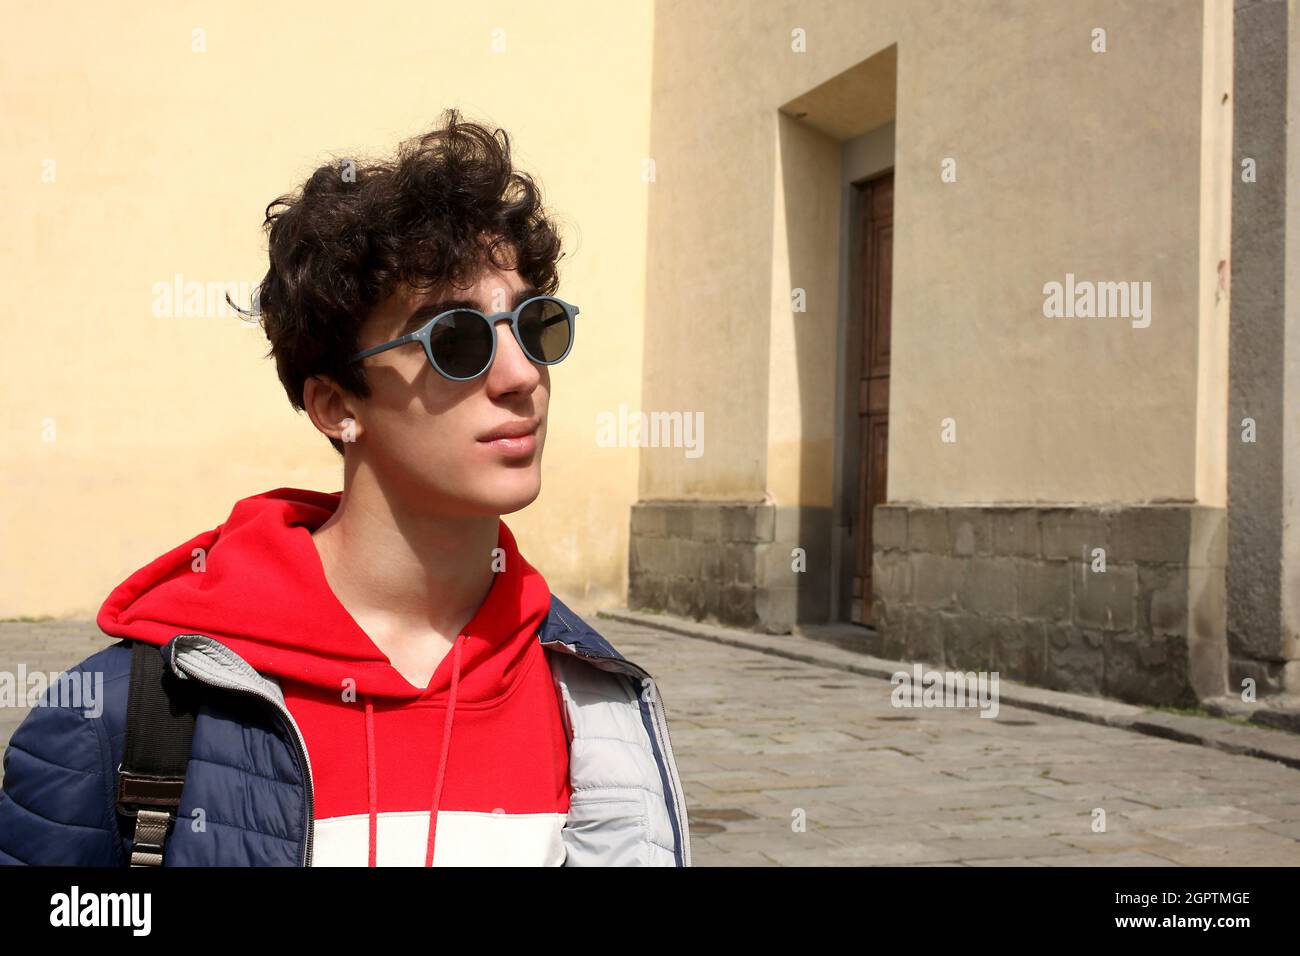 Portrait d'un garçon adolescent portant des lunettes de soleil debout  contre le mur Photo Stock - Alamy